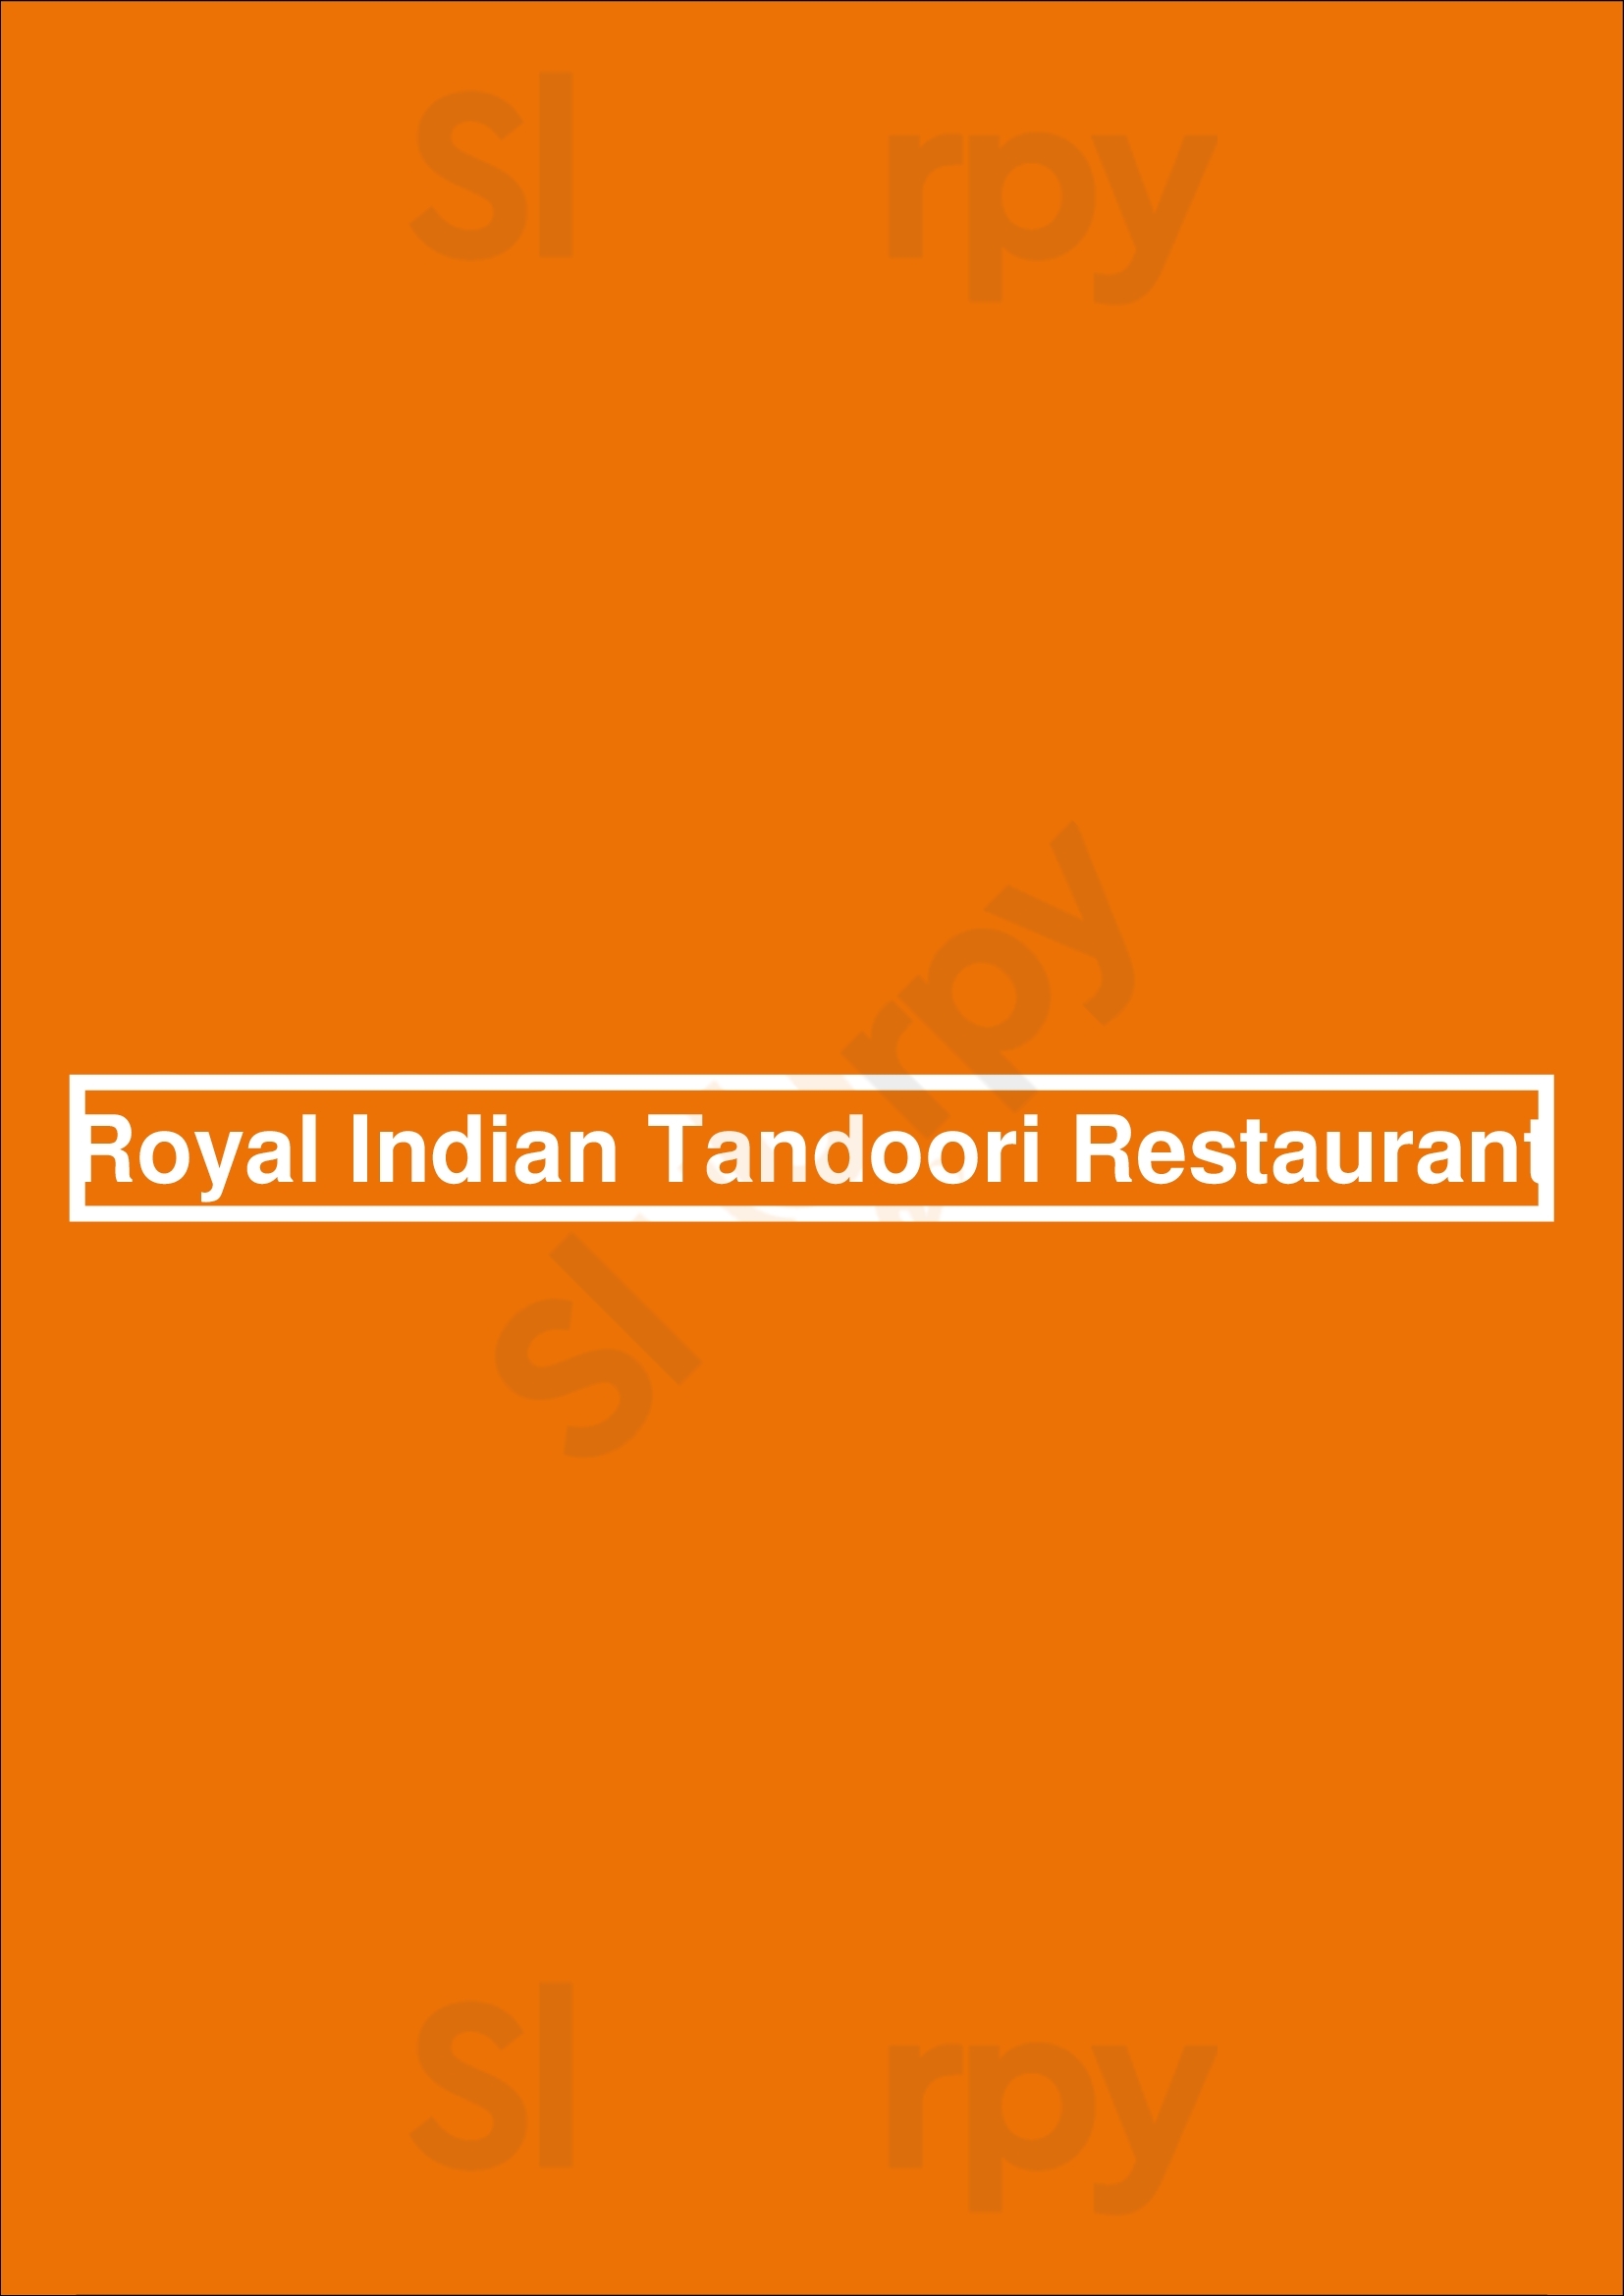 Royal Indian Tandoori Restaurant Rotterdam Menu - 1